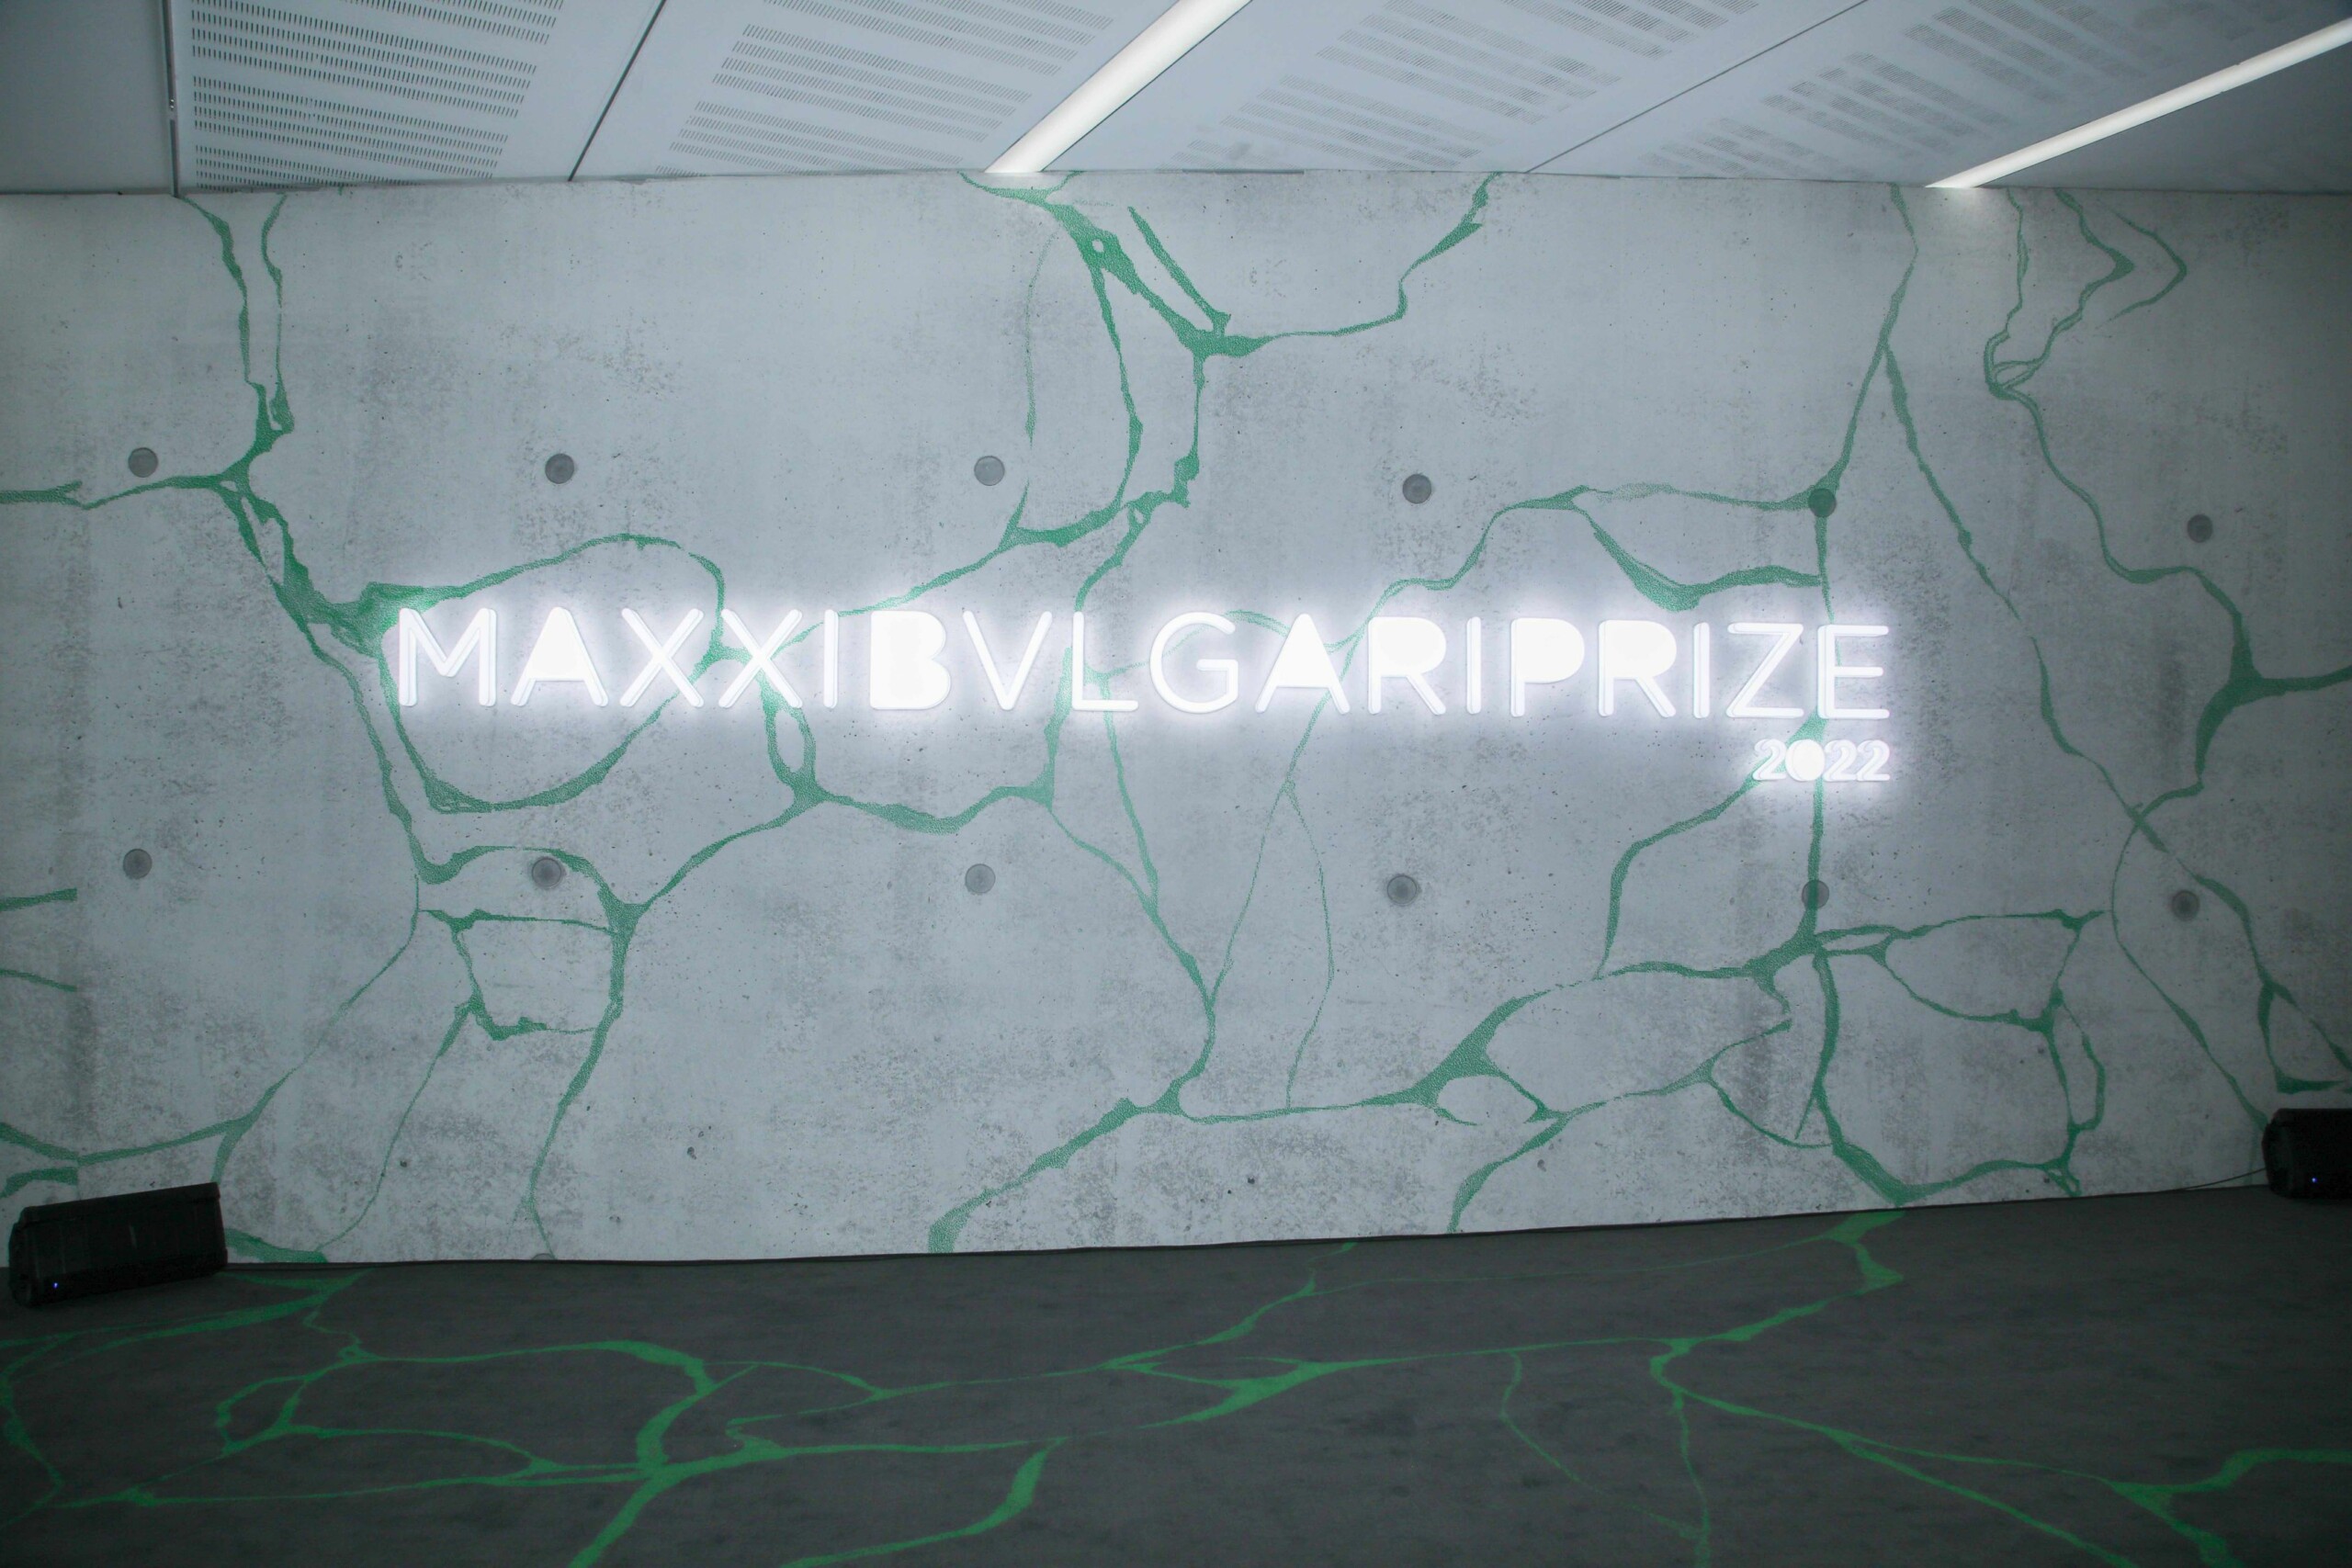 MAXXI Bulgari Prize 2022